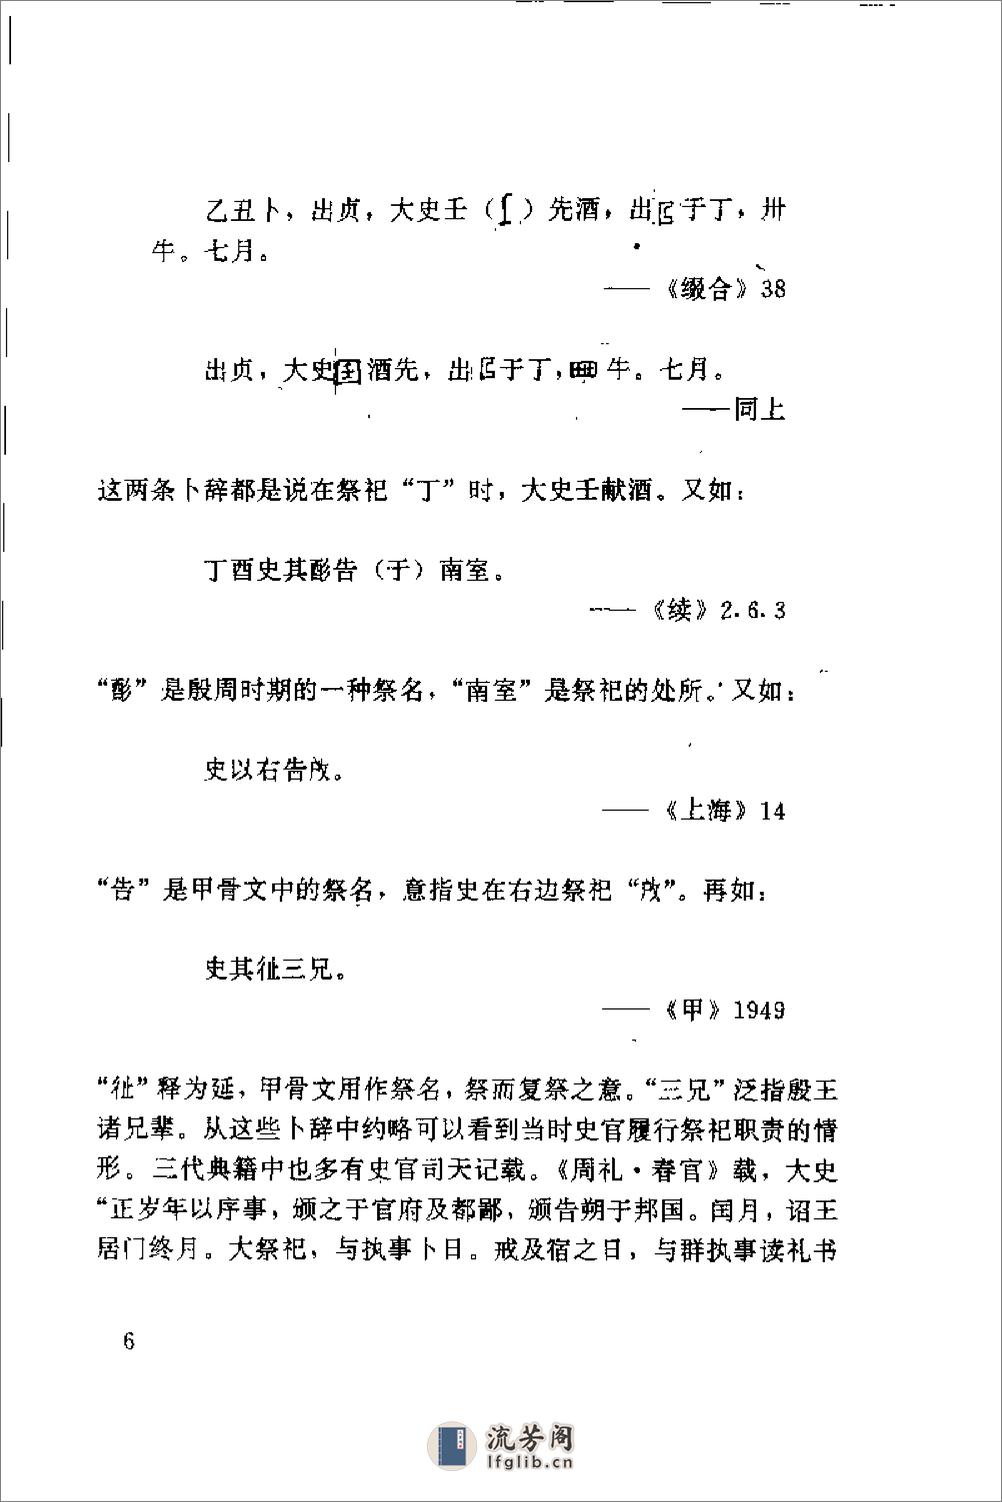 中国史官文化与史记 - 第20页预览图